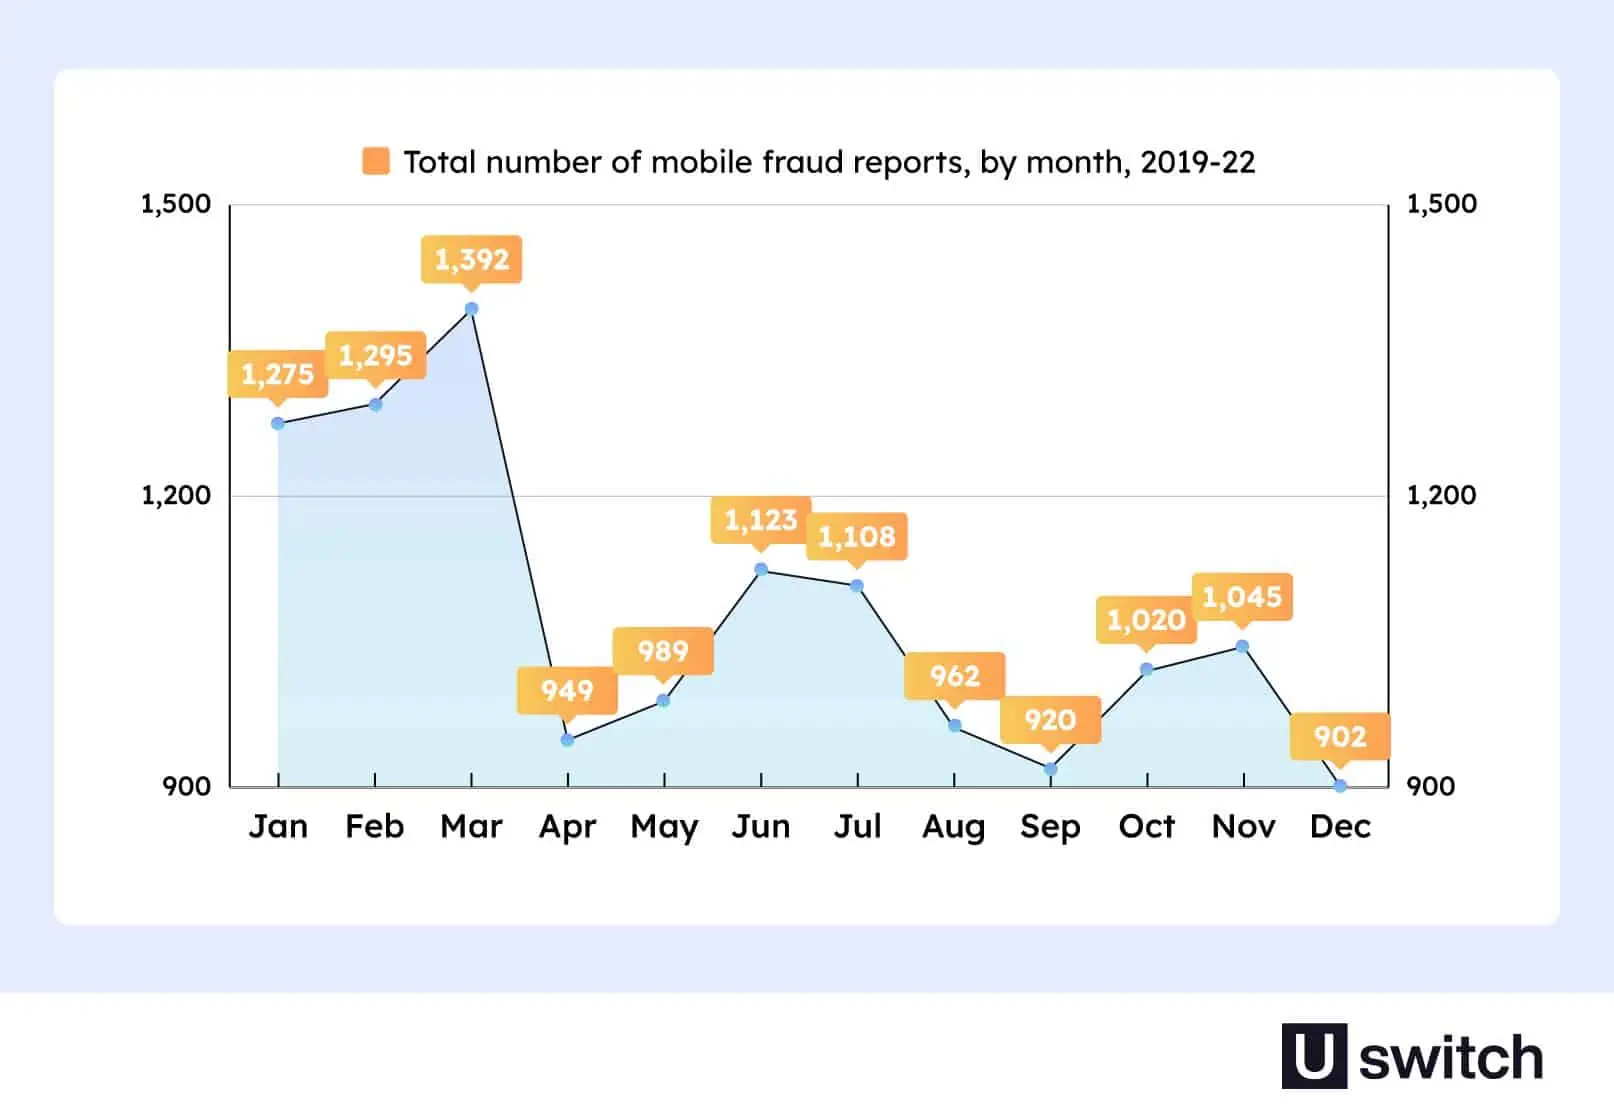 Rapports de fraude mobile Uswitch par mois